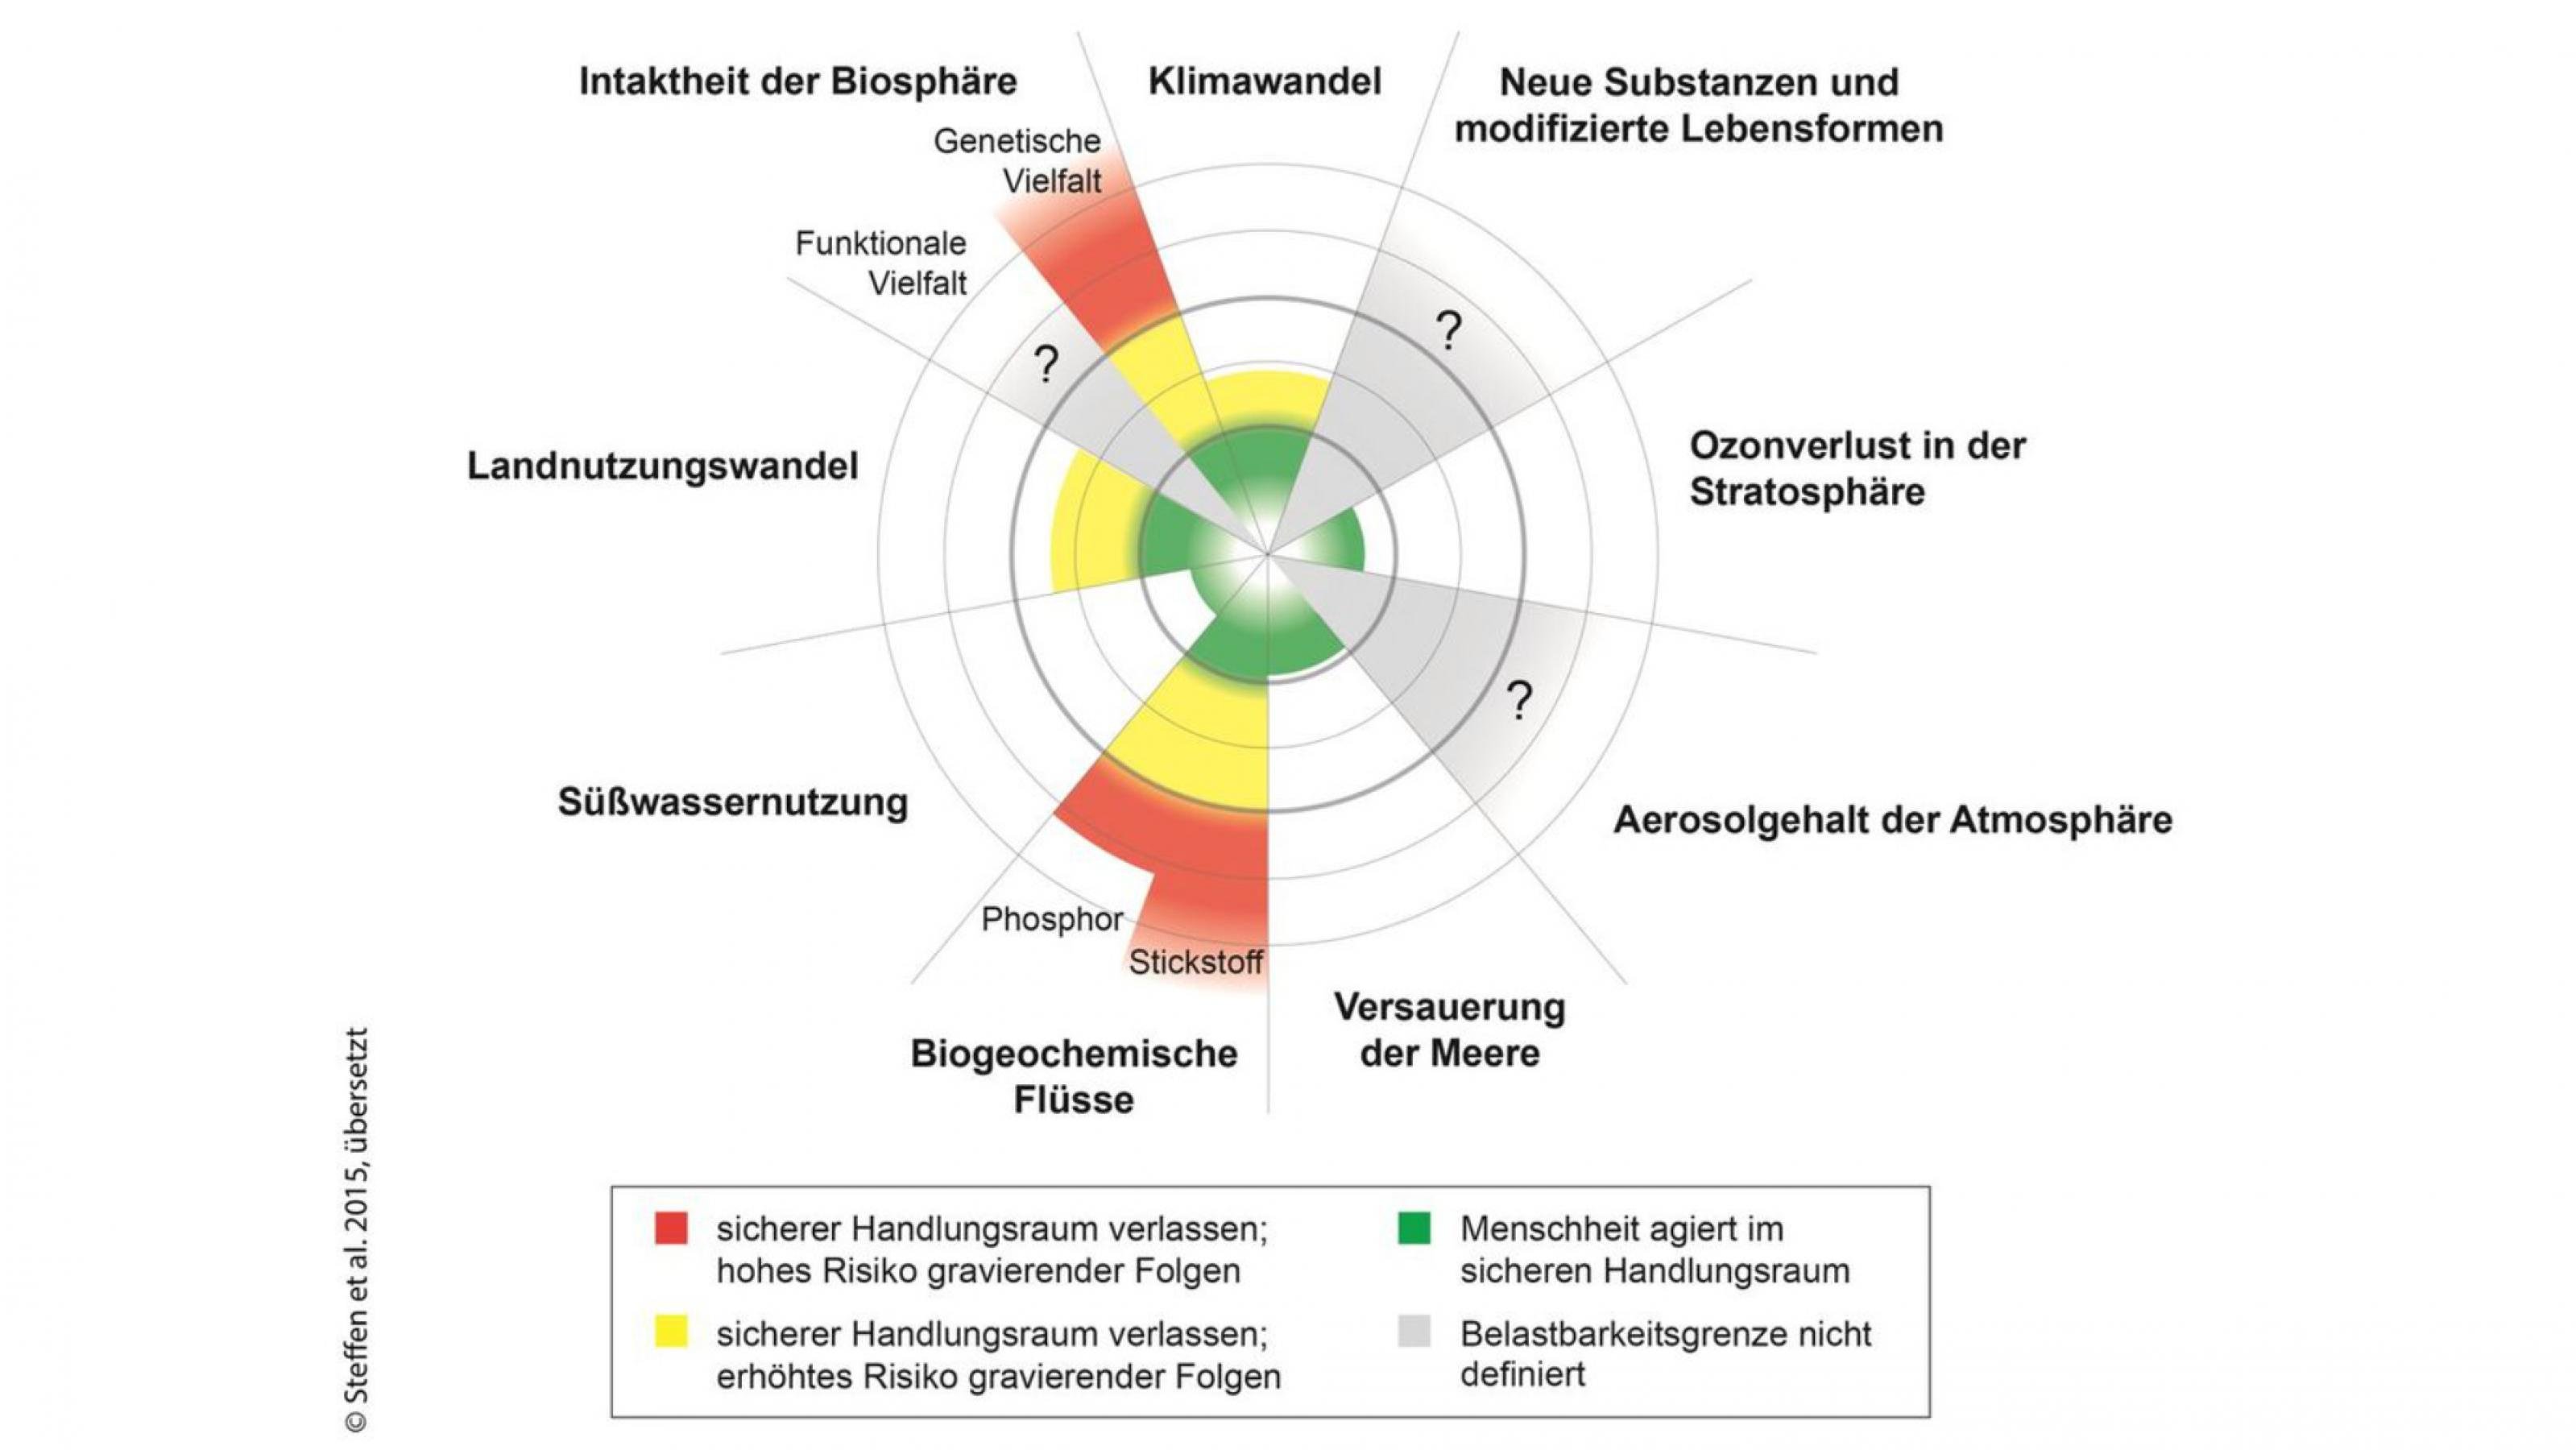 Ein Kreisdiagramm mit neun Segmenten, unter anderem Klimawandel, Landnutzungswandel, Biogeochemische Flüsse und Intaktheit der Biosphäre. In diesen vier Bereichen befindet sich das System Erde in der gelben Gefahrenzone bzw. in der roten Hochrisikozone.